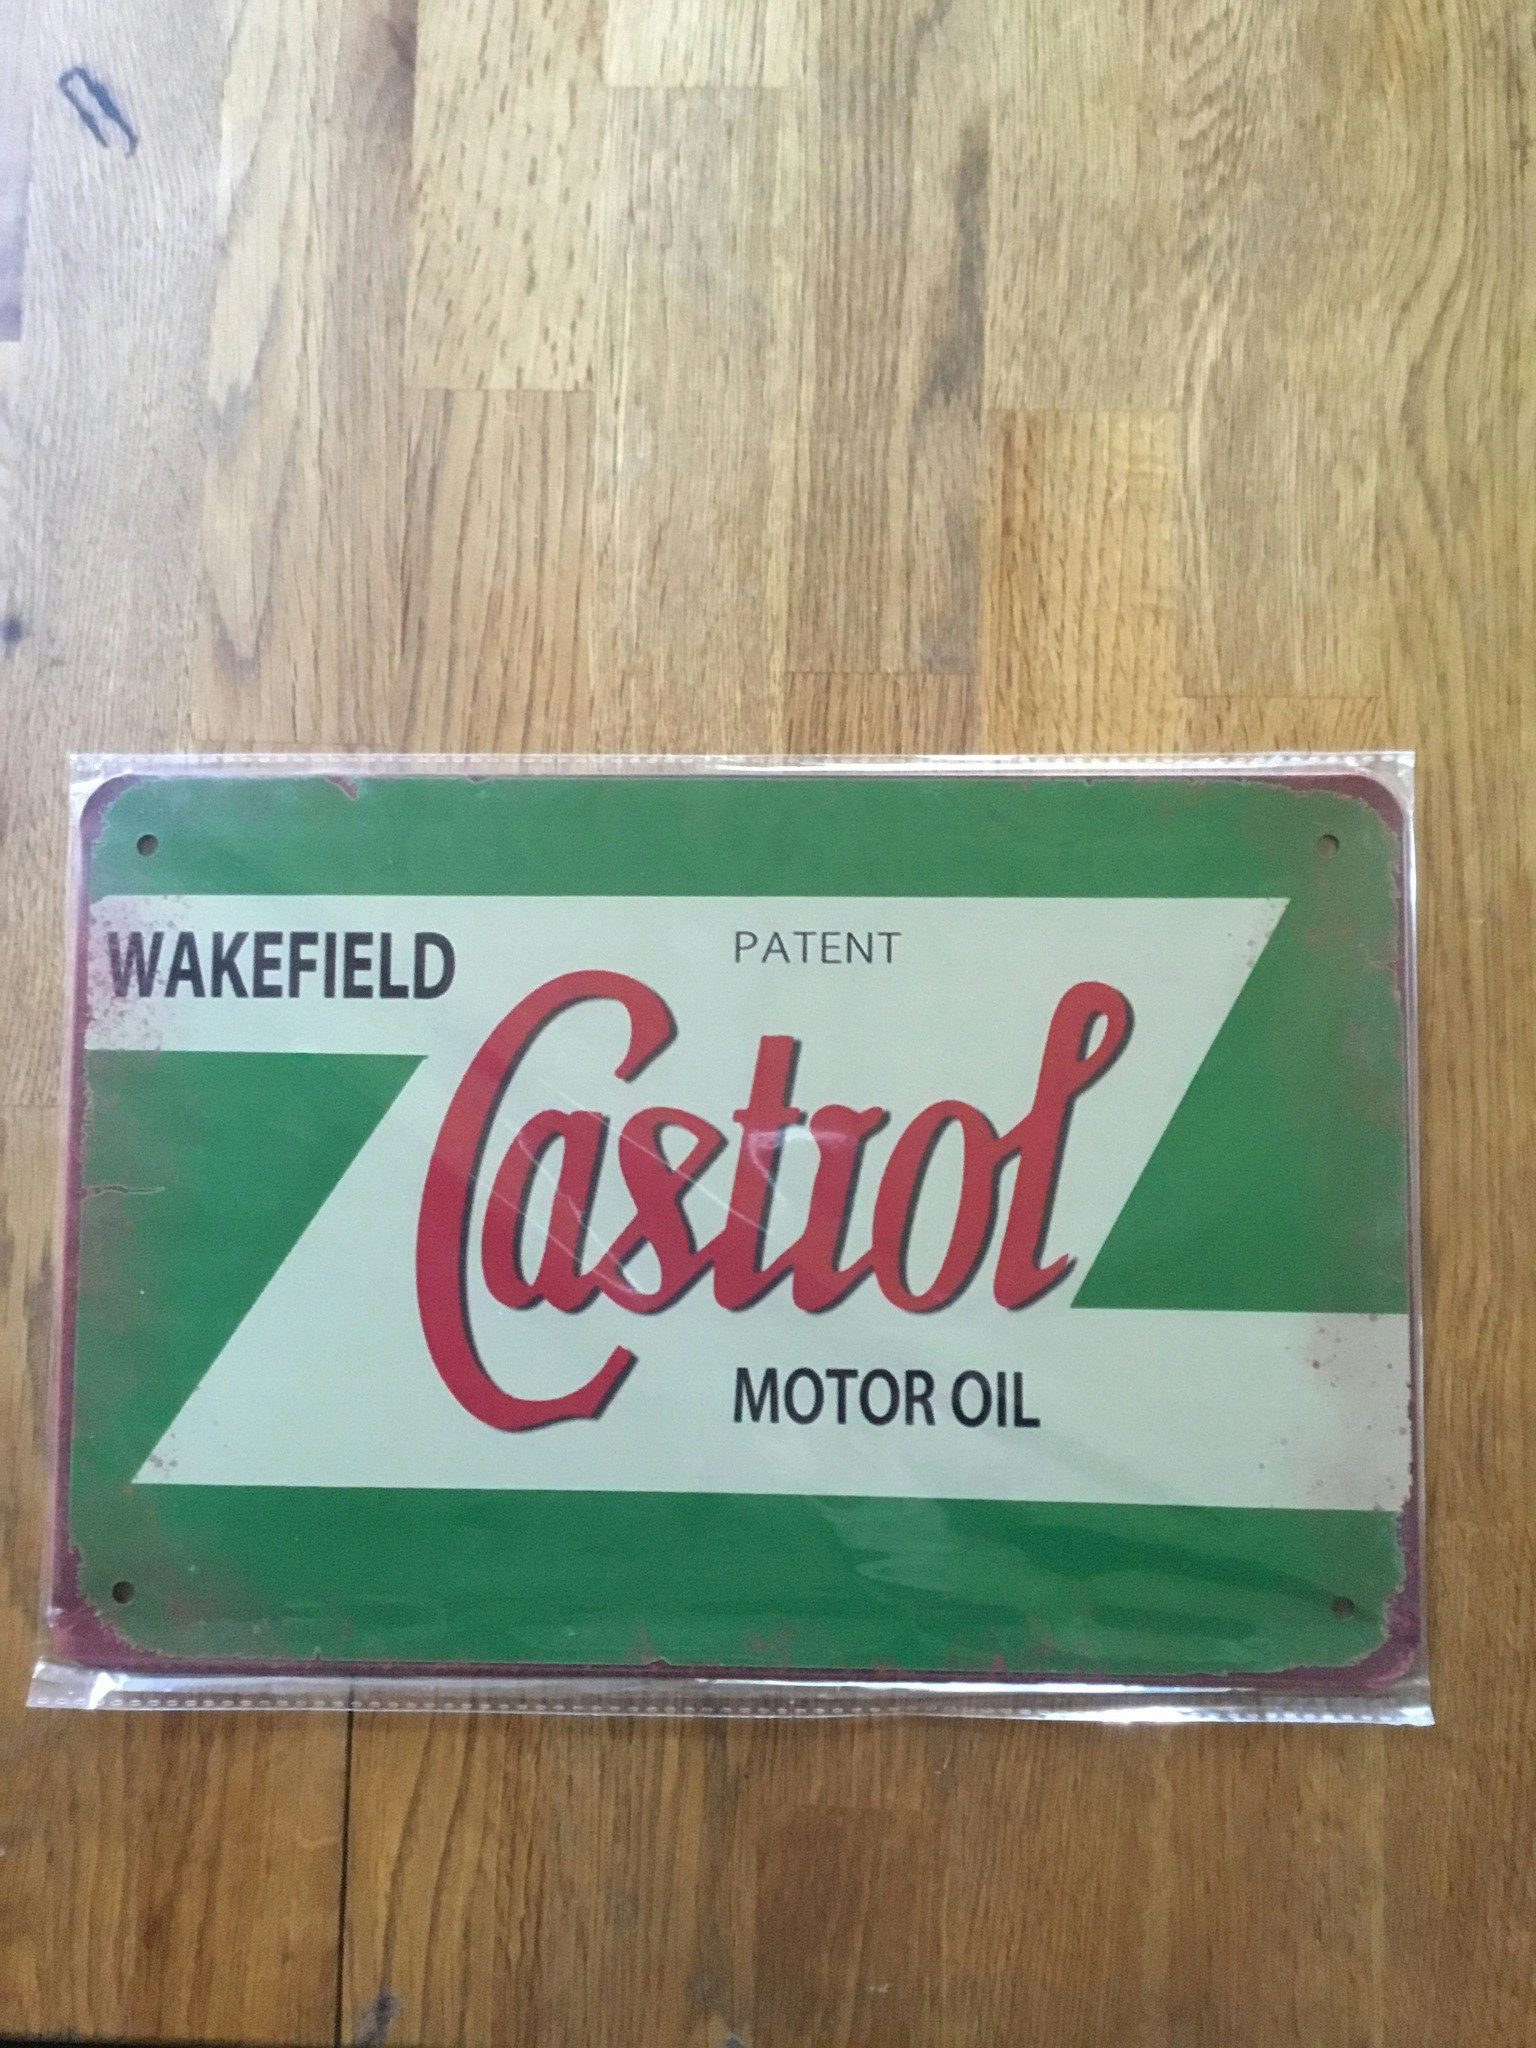 Wakefieldcastrol motor oil